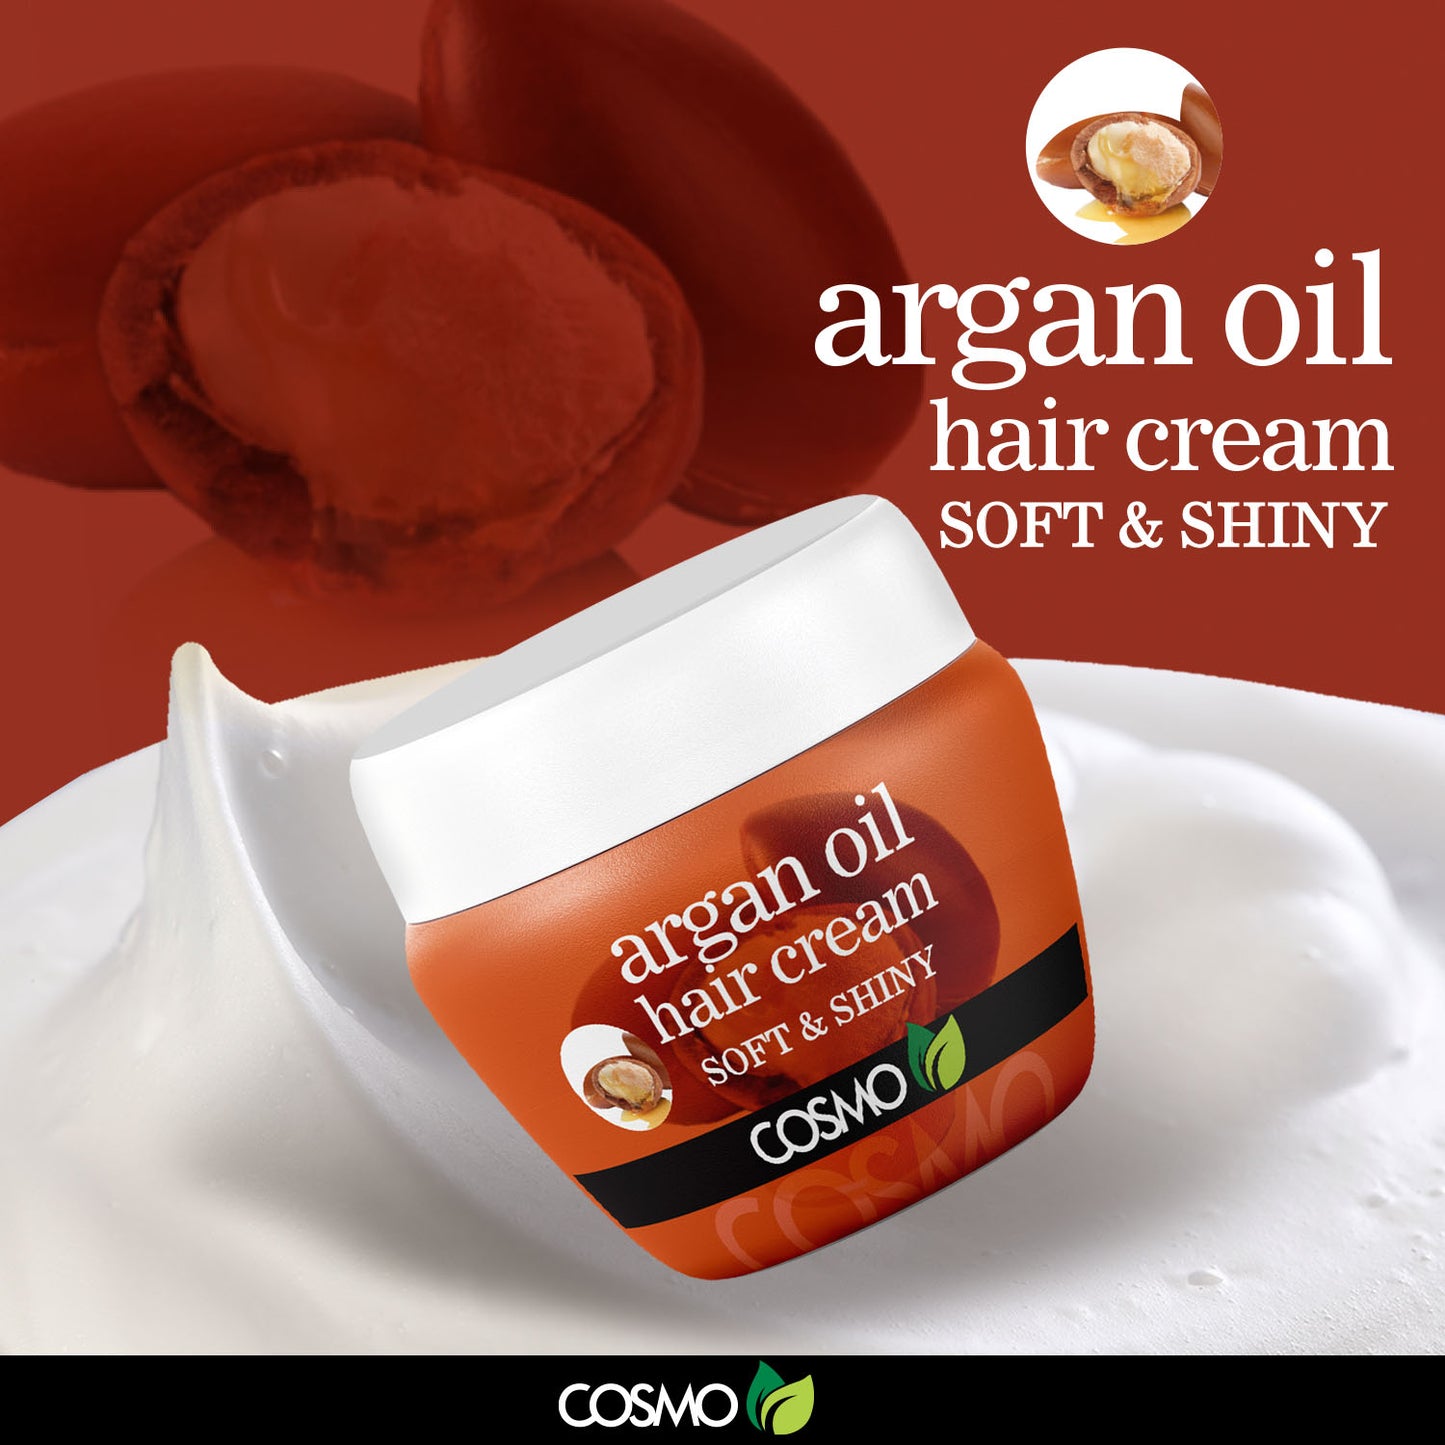 ARGAN OIL HAIR CREAM - SOFT & SHINY